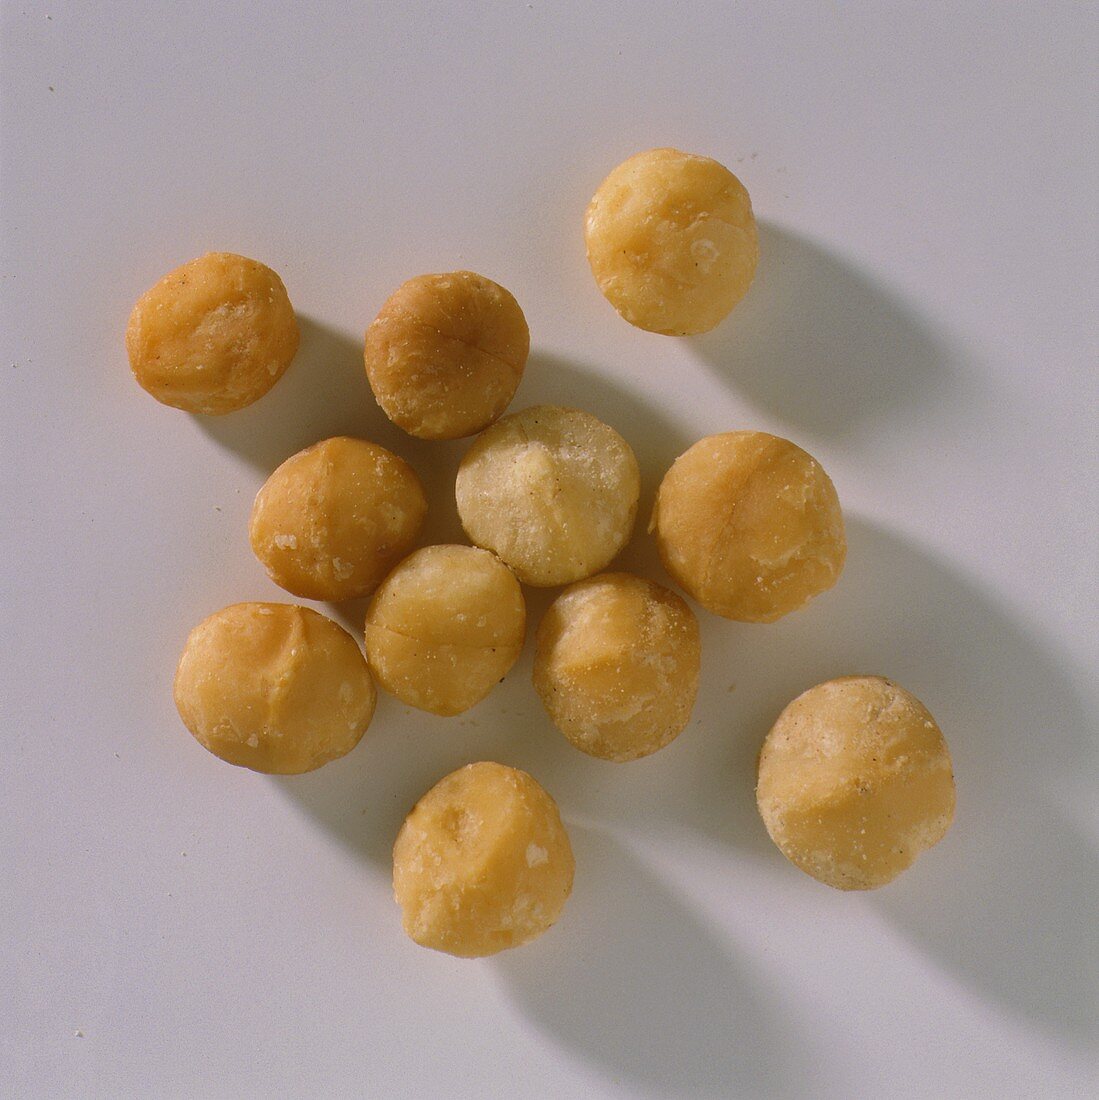 A few macadamia nut kernels